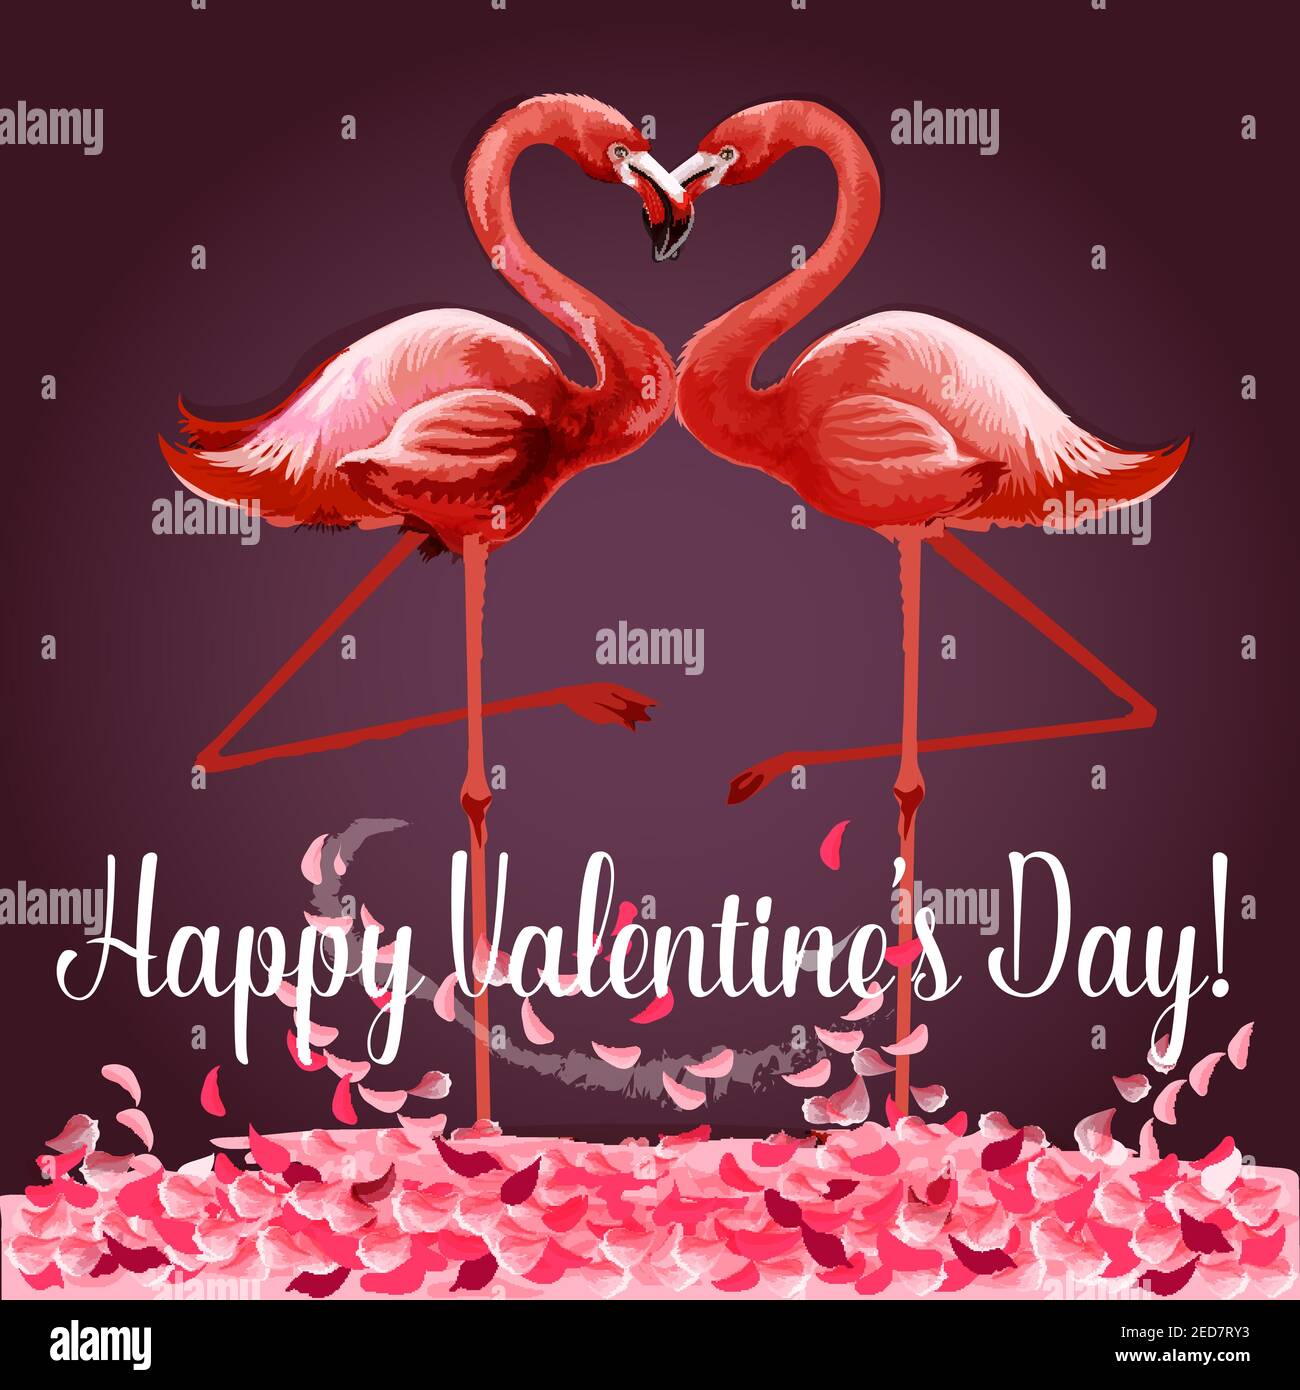 Liebe und Valentinstag Karte. Romantische rosa Flamingo Vögel verbinden Köpfe, um ein Herz zu schaffen. Grußkarte mit Liebesvögeln und Rosenblüten. Festlich Stock Vektor